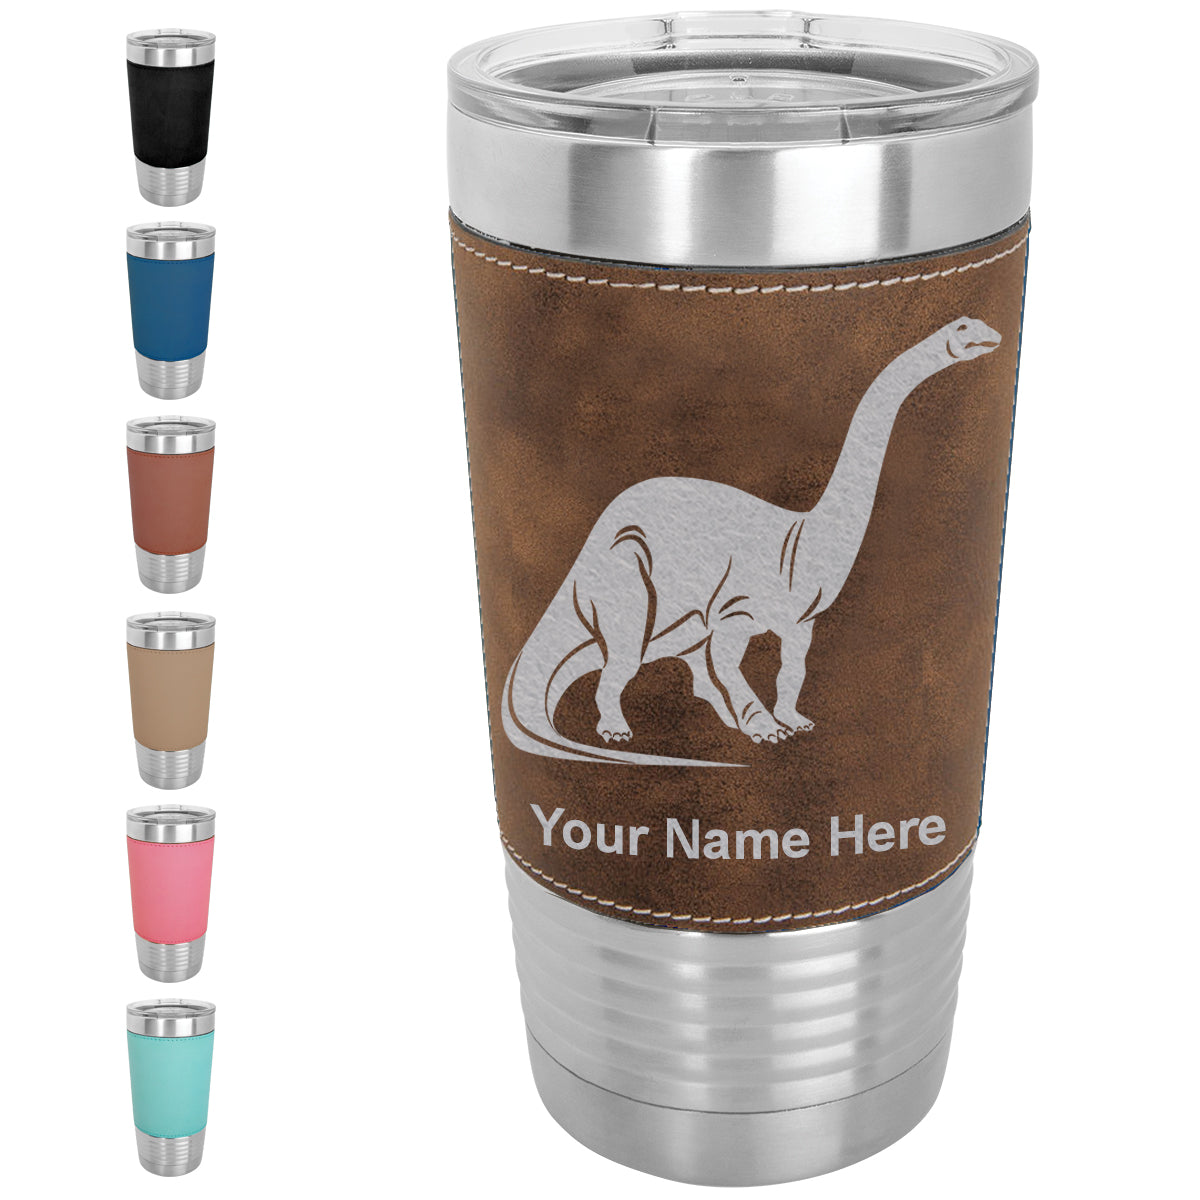 20oz Faux Leather Tumbler Mug, Brontosaurus Dinosaur, Personalized Engraving Included - LaserGram Custom Engraved Gifts